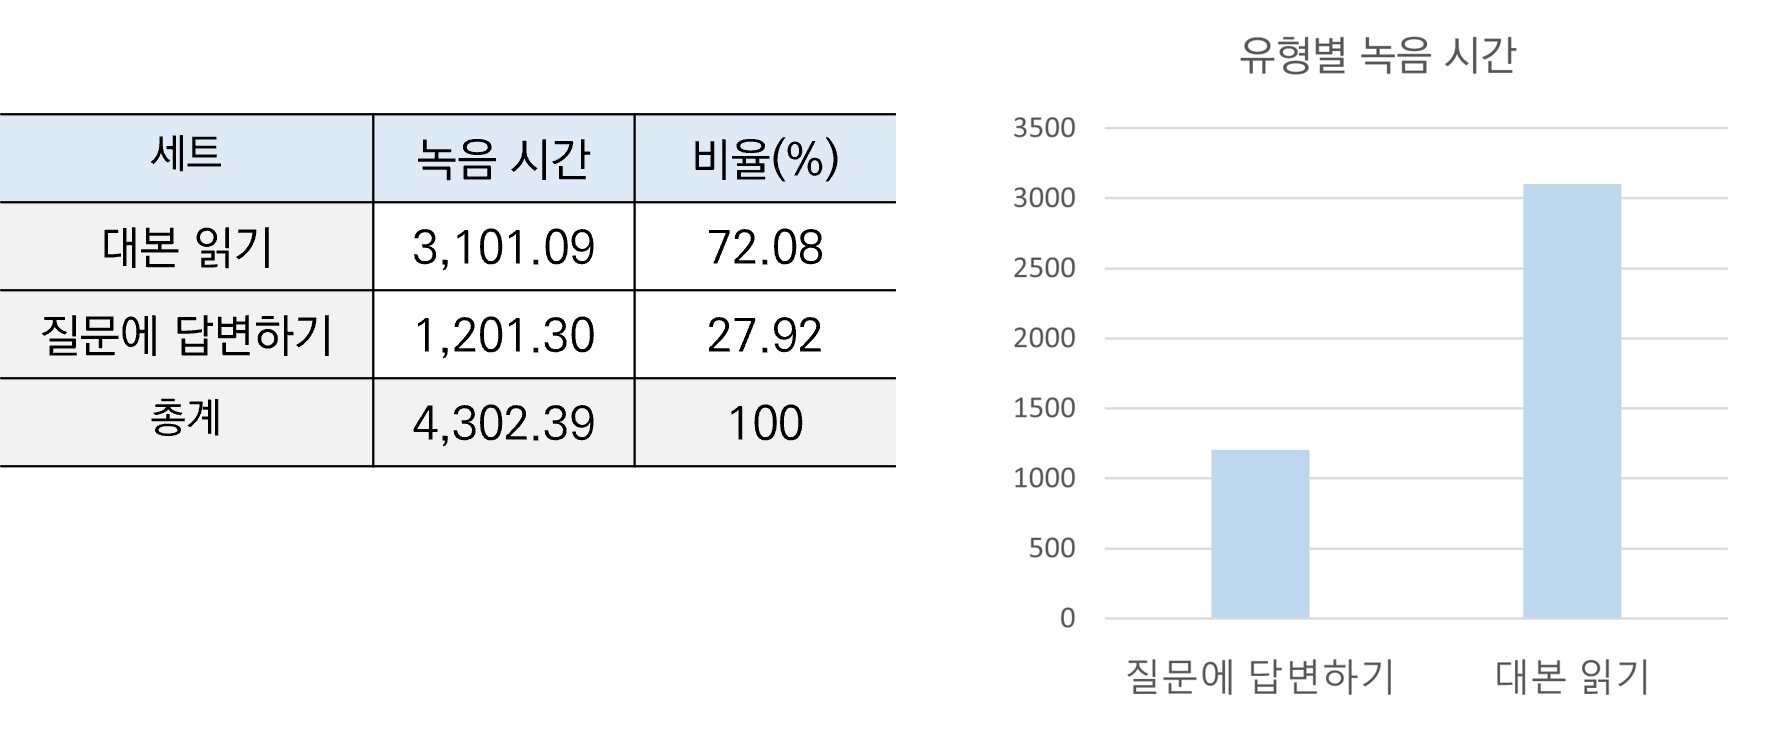 인공지능 학습을 위한 외국인 한국어 발화 음성-데이터 분포_3_유형별 분포